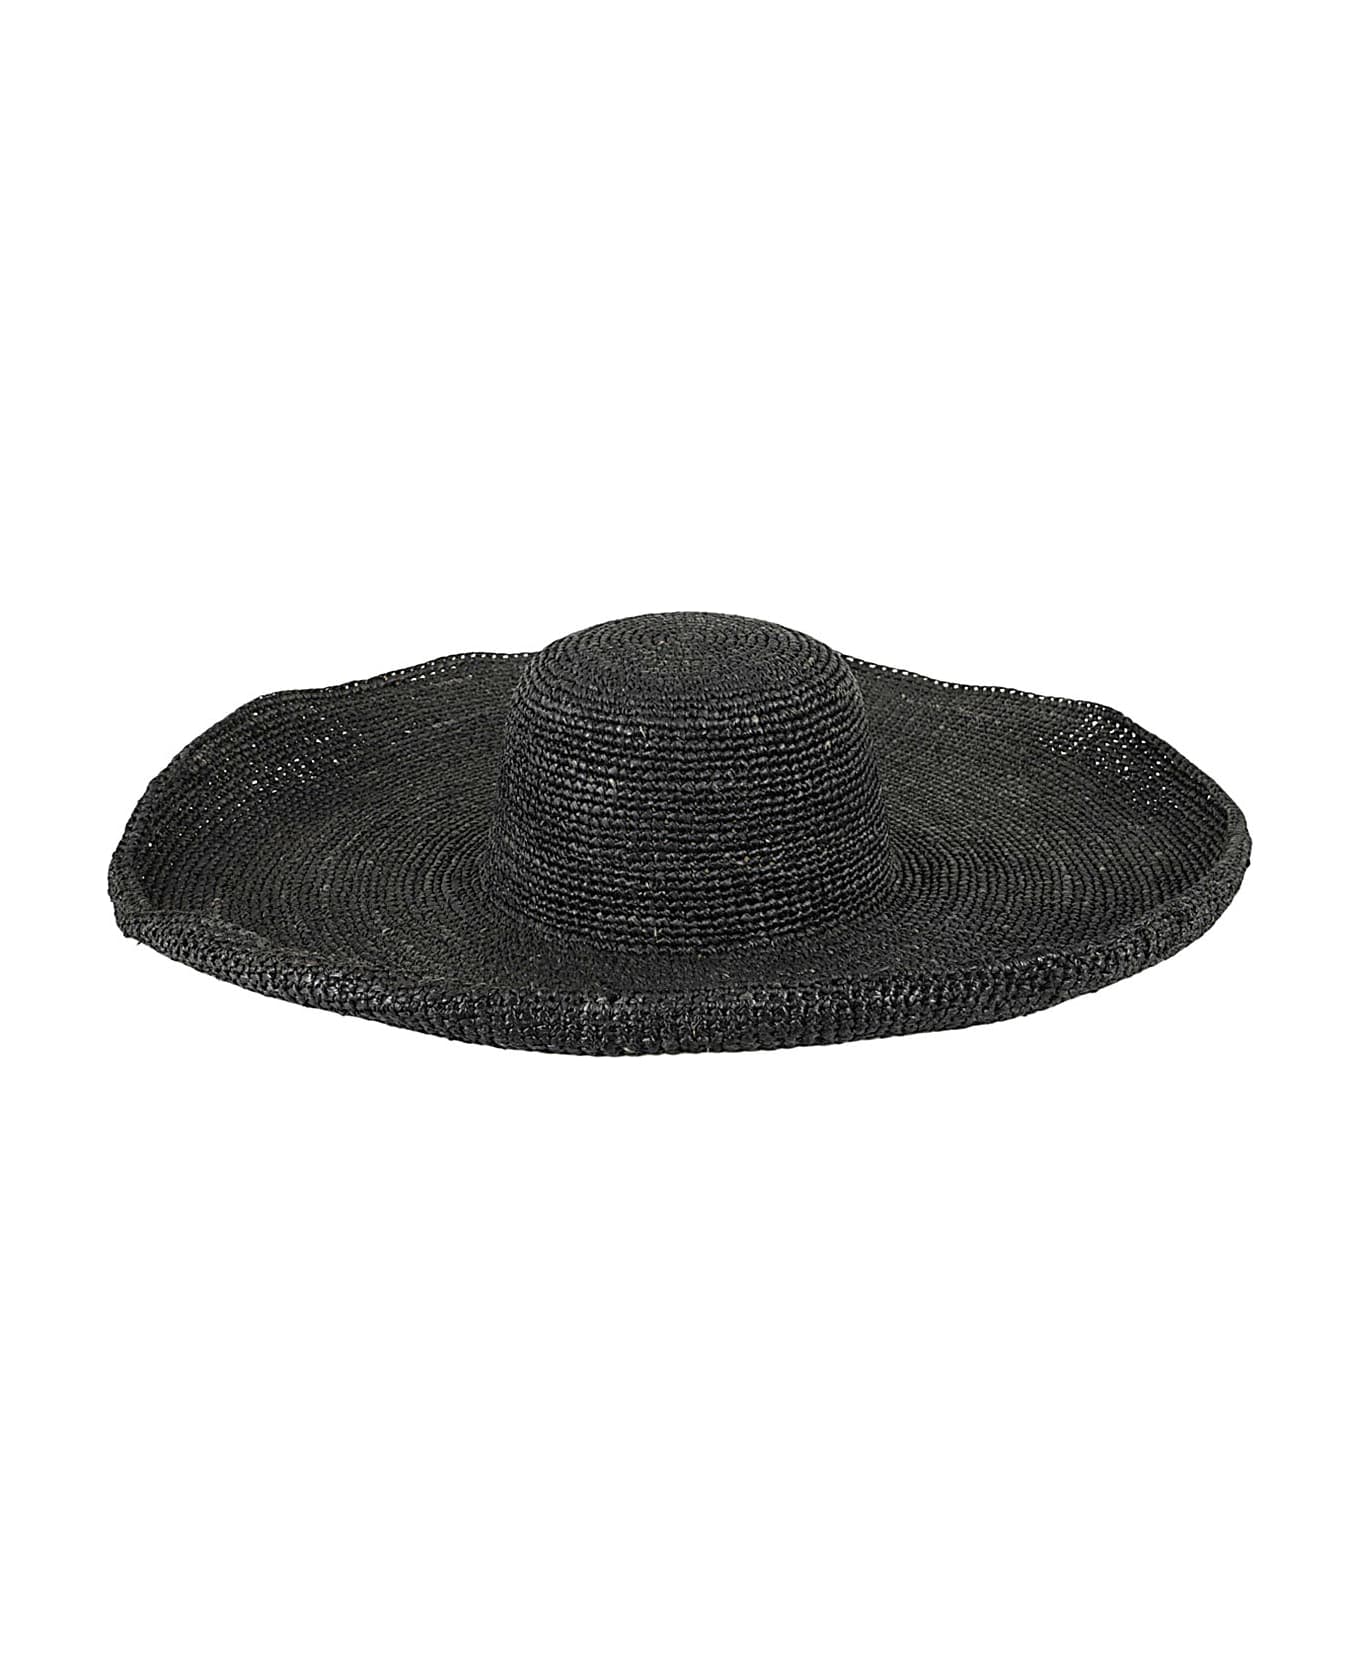 Ibeliv Hat - Black